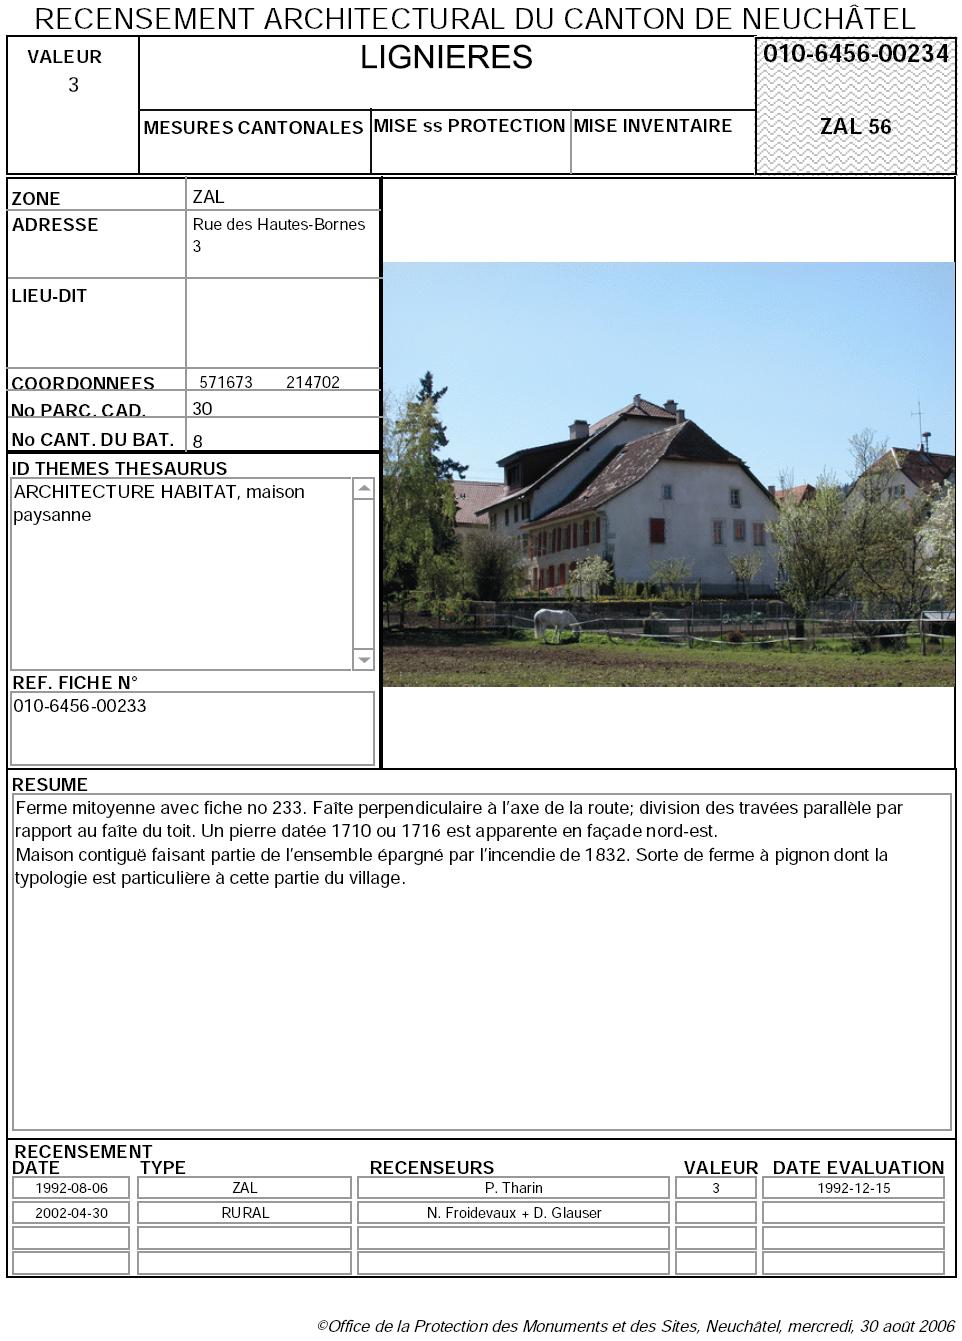 Recensement architectural du canton de Neuchâtel: Fiche 010-6456-00234